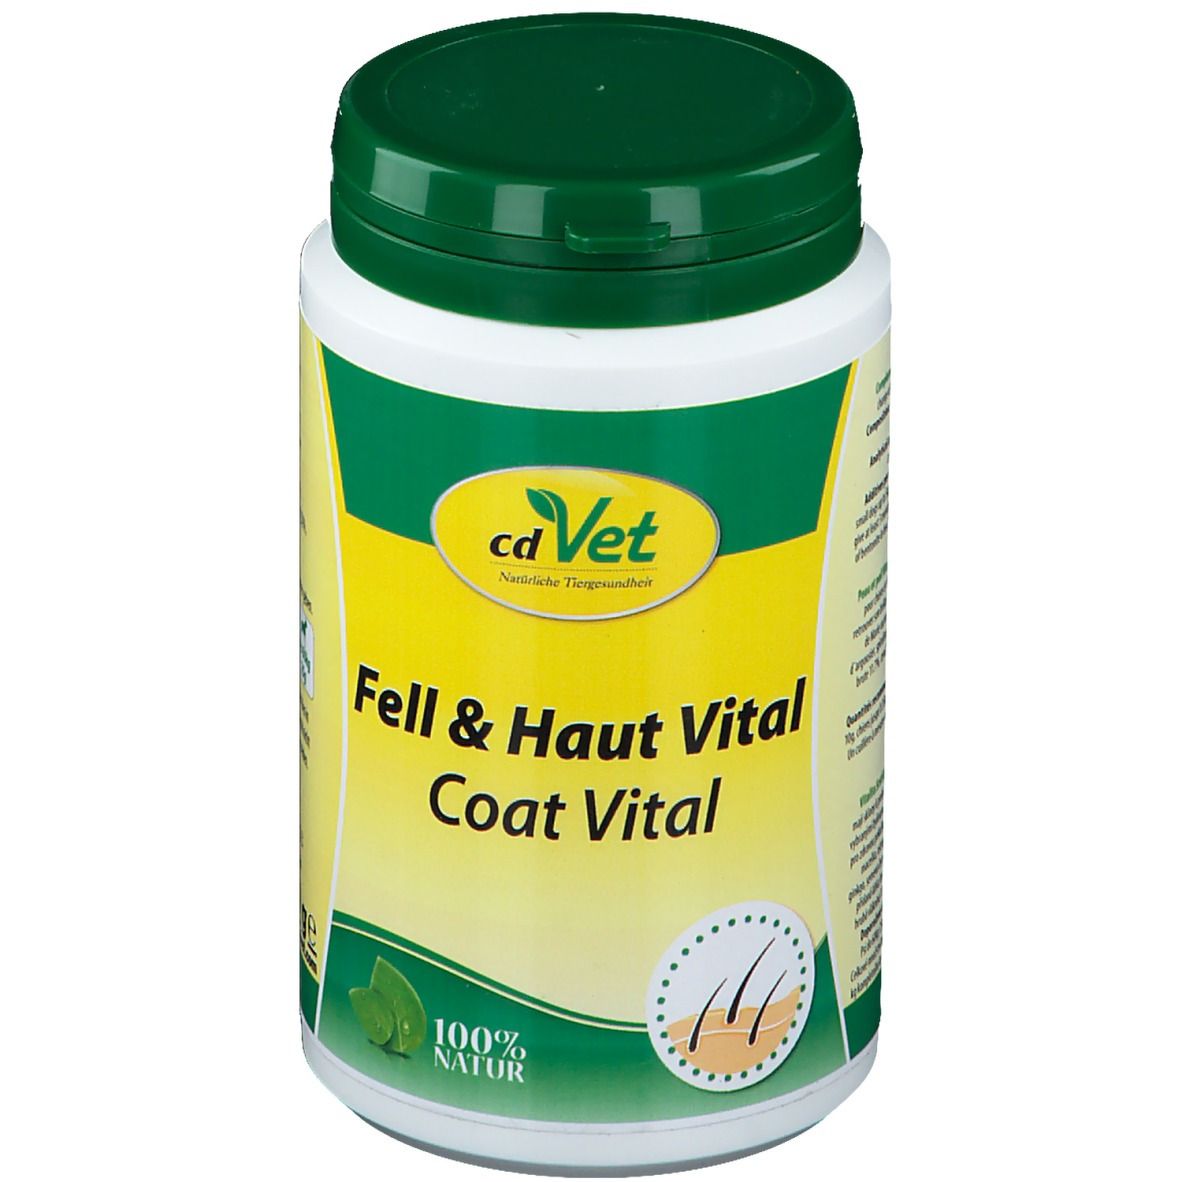 cd Vet Fell & Haut Vital